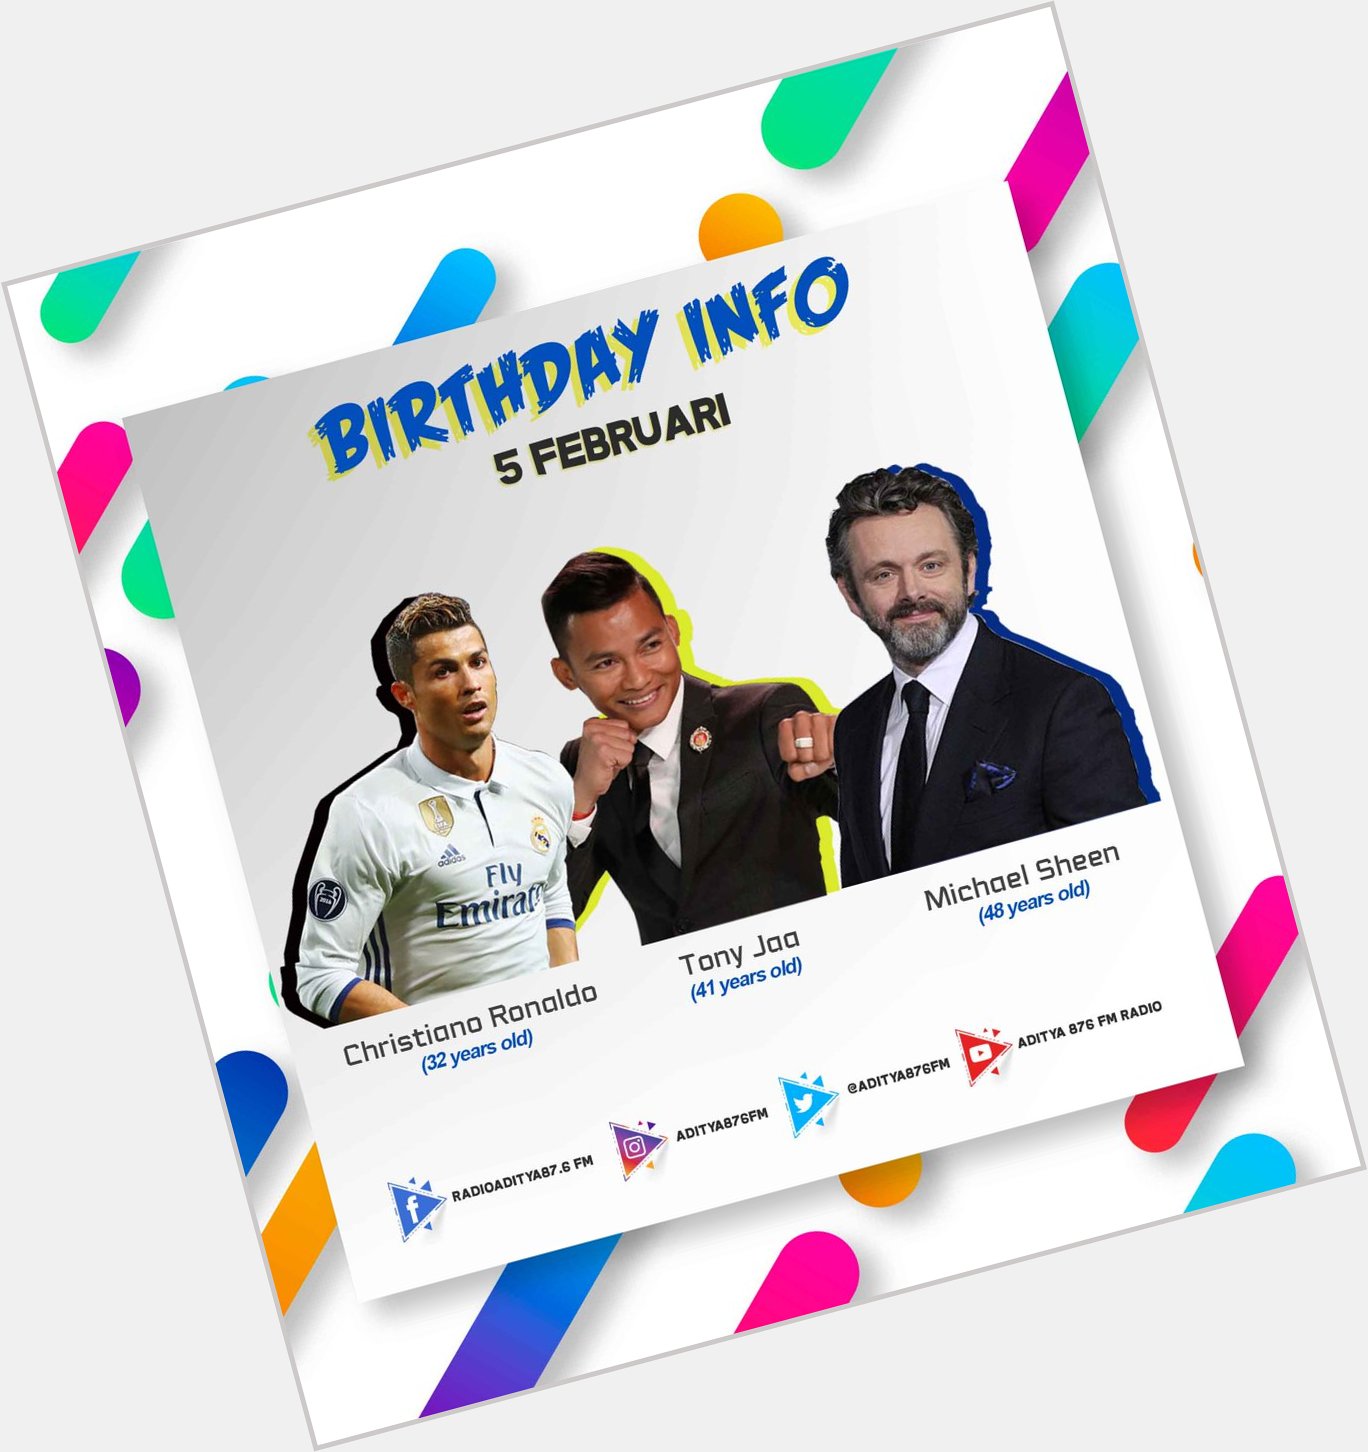 Happy Birthday Christiano Ronaldo, Tony Jaa & Michael Sheen ! 